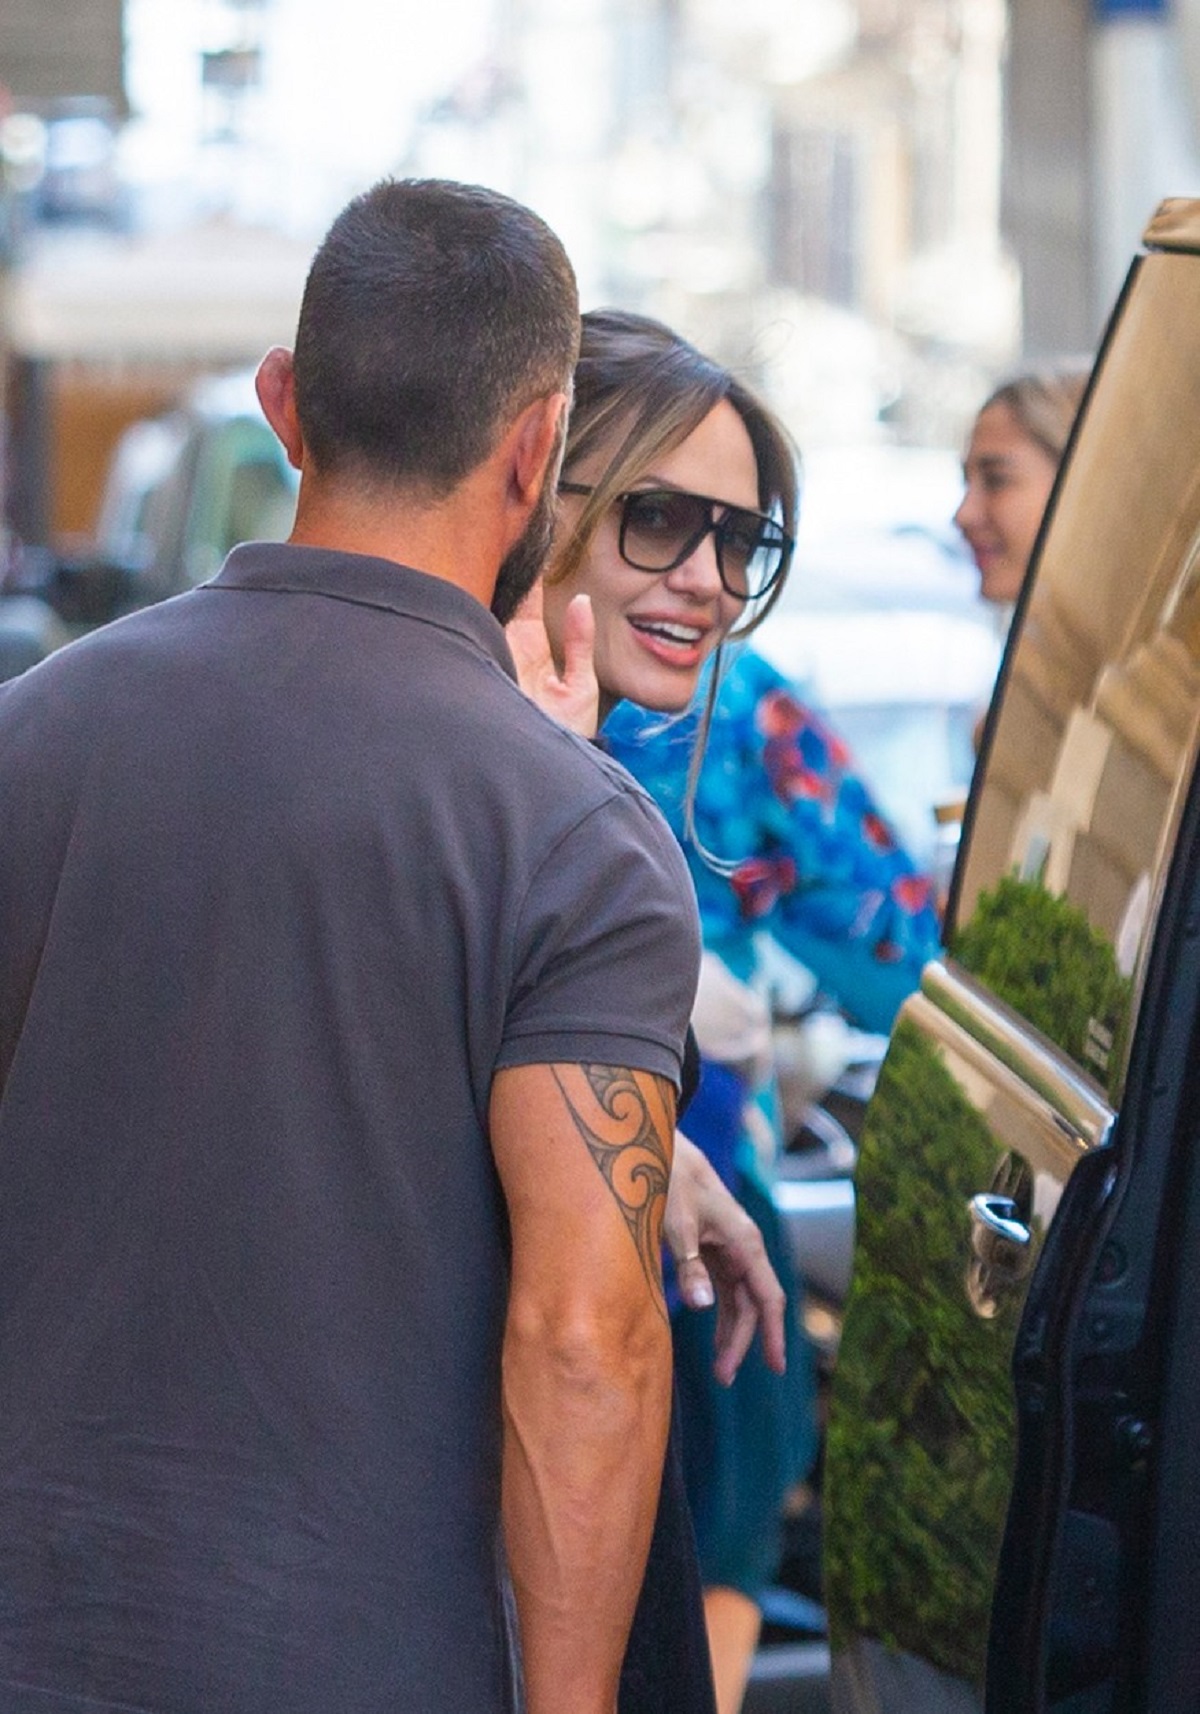 Înainte să se urce în mașină, Angelina Jolie a zâmbit spre jurnaliști și le-a făcut cu mâna